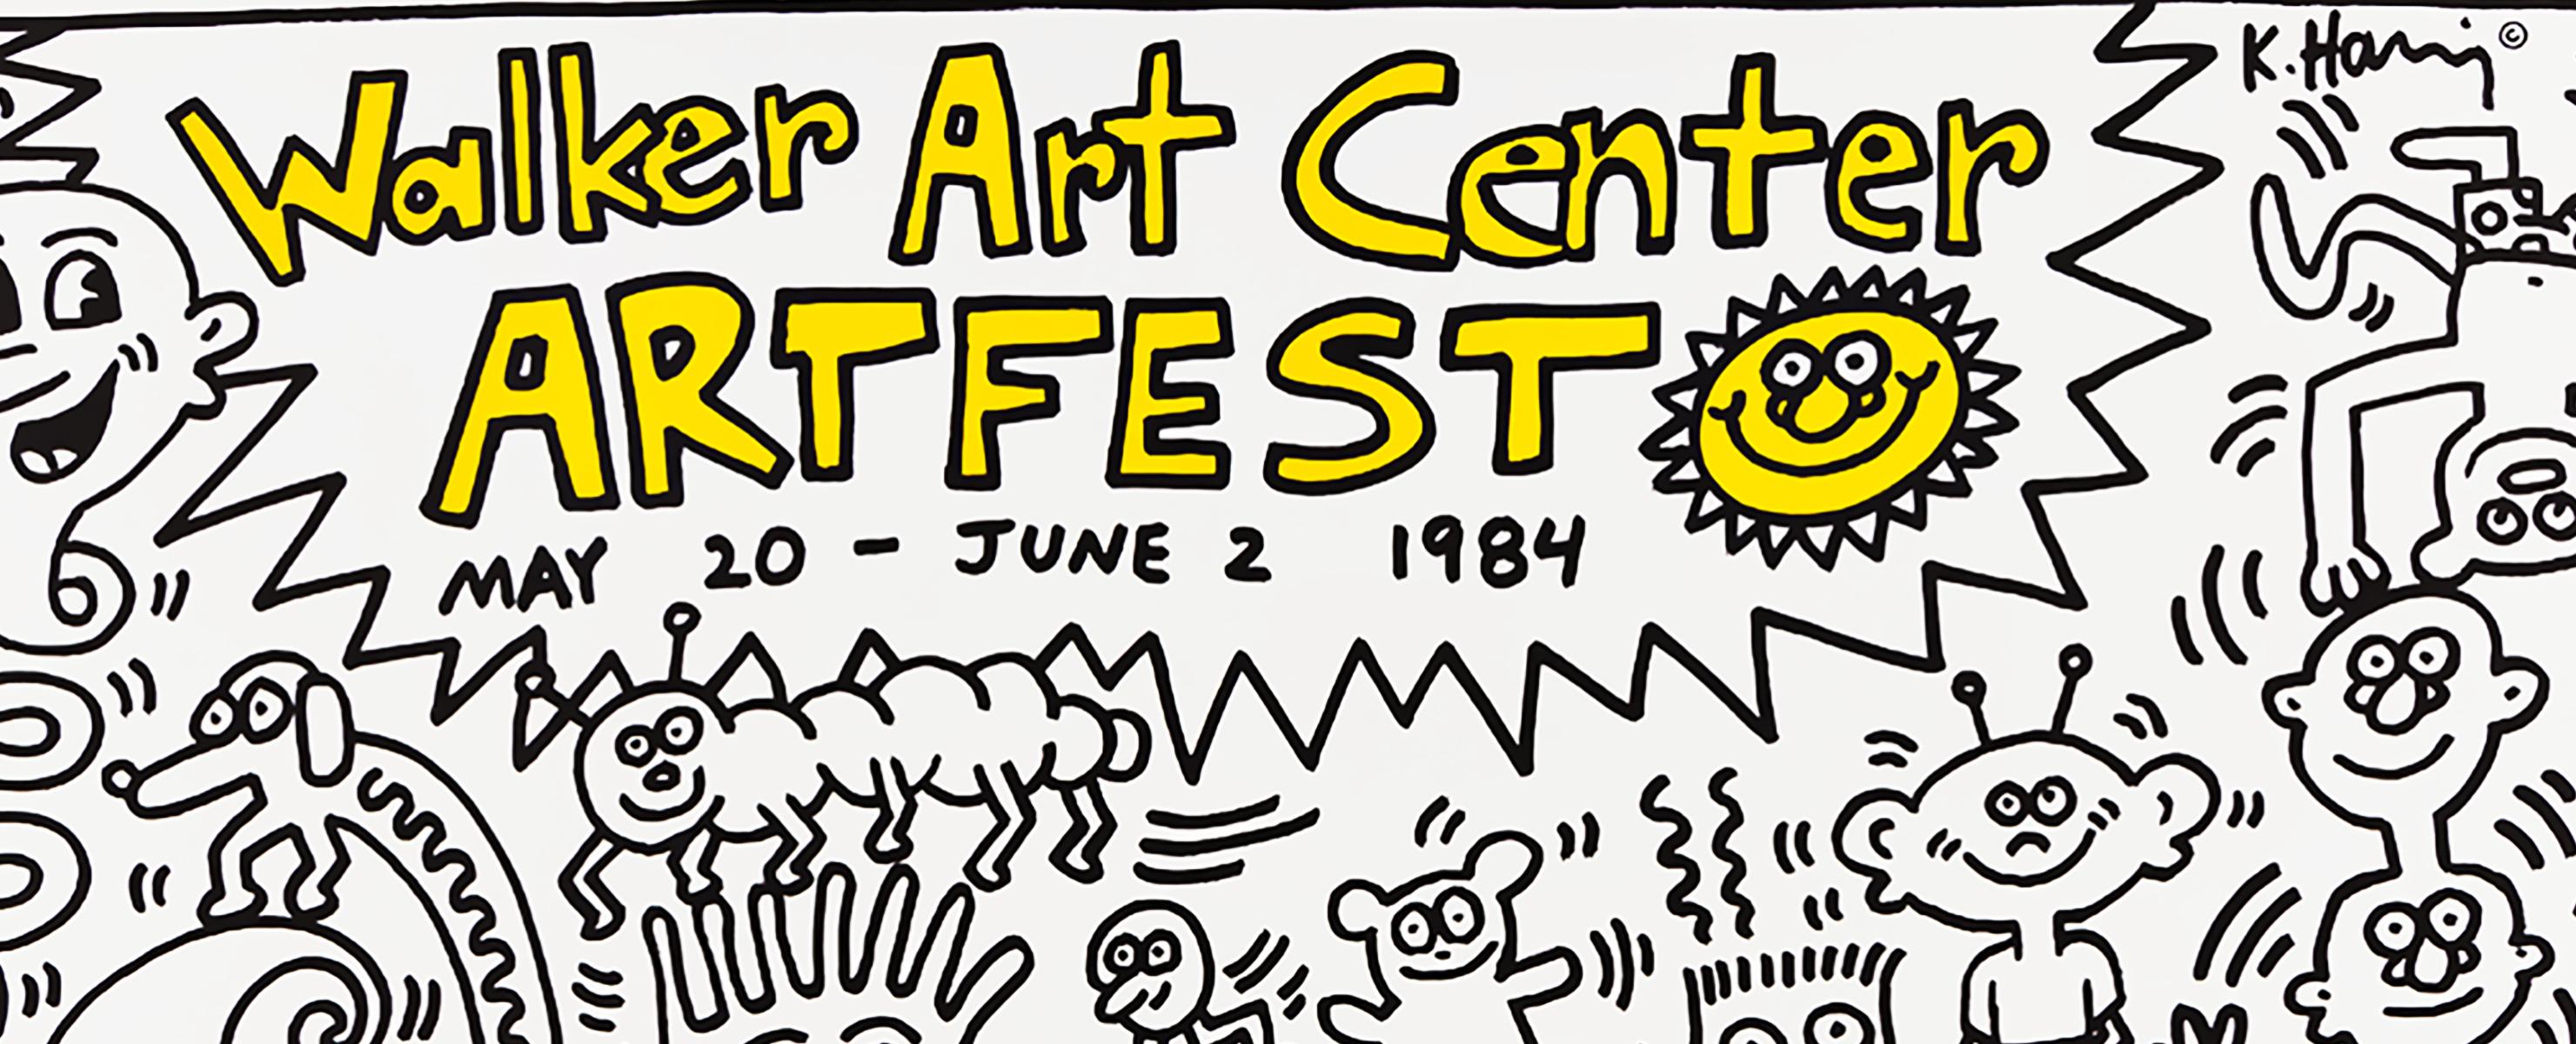 Keith Haring Walker Art Center Artfest 1984:
